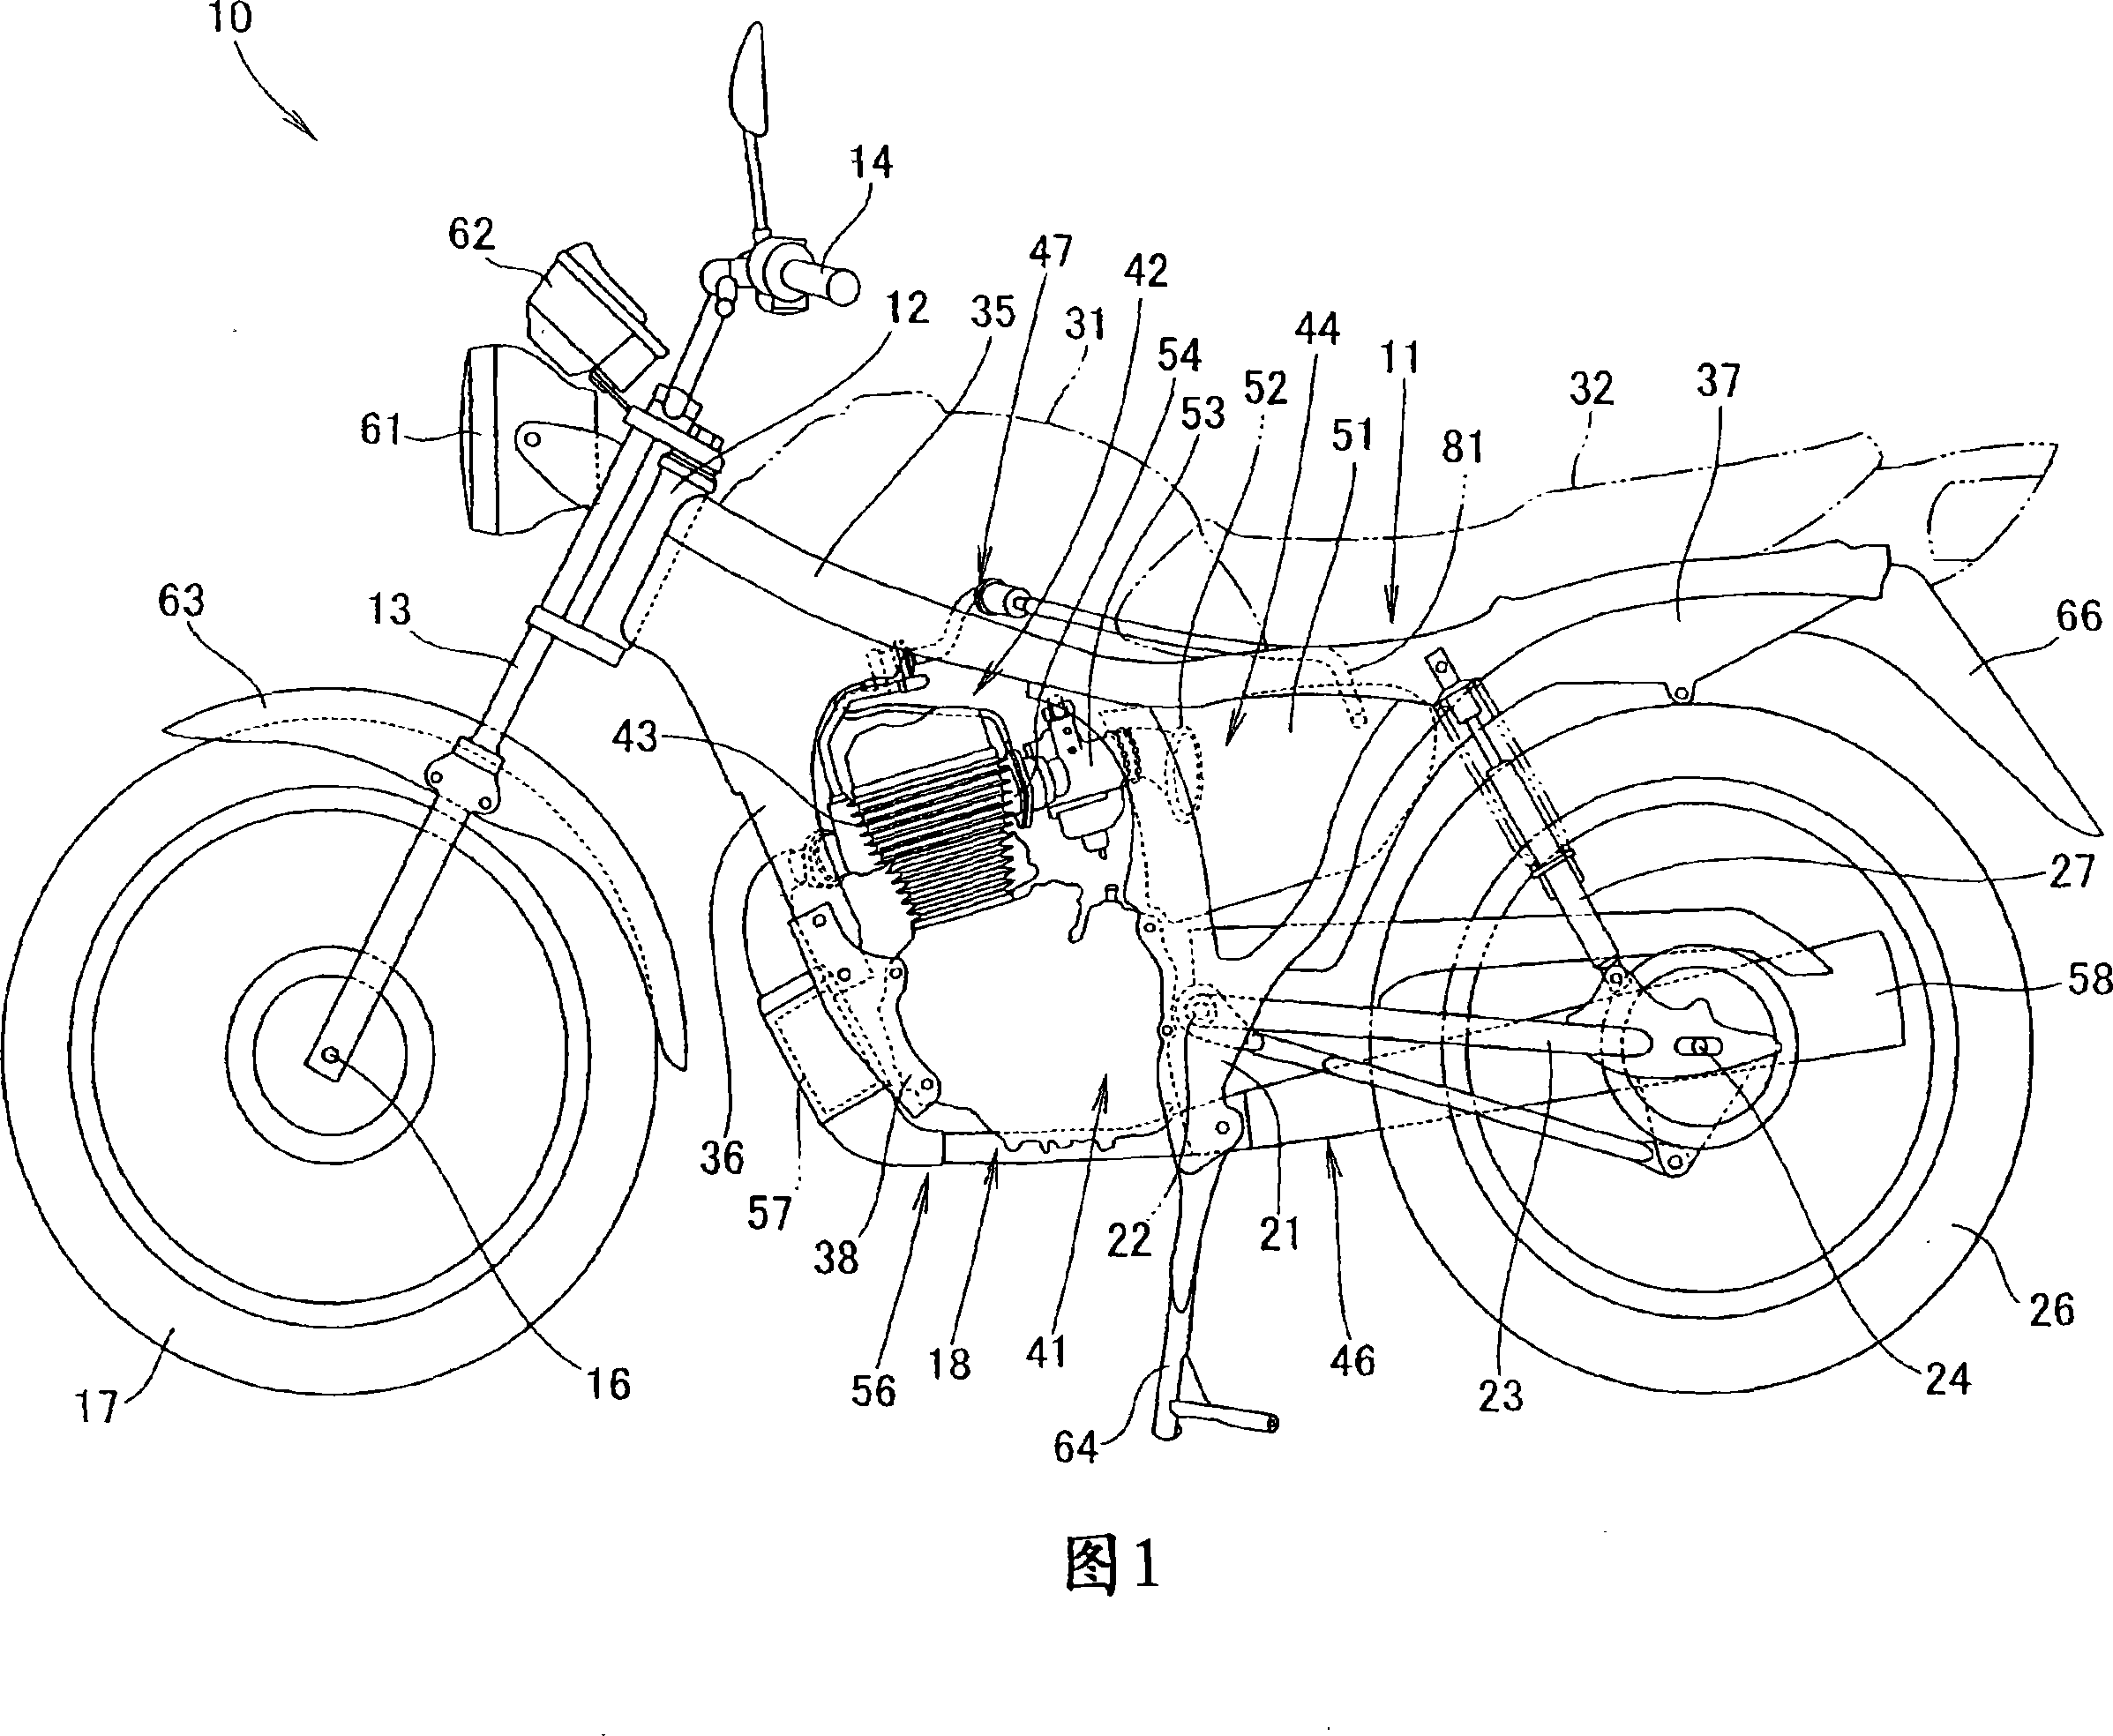 Catalyst arrangement construction of two-wheel motor vehicle